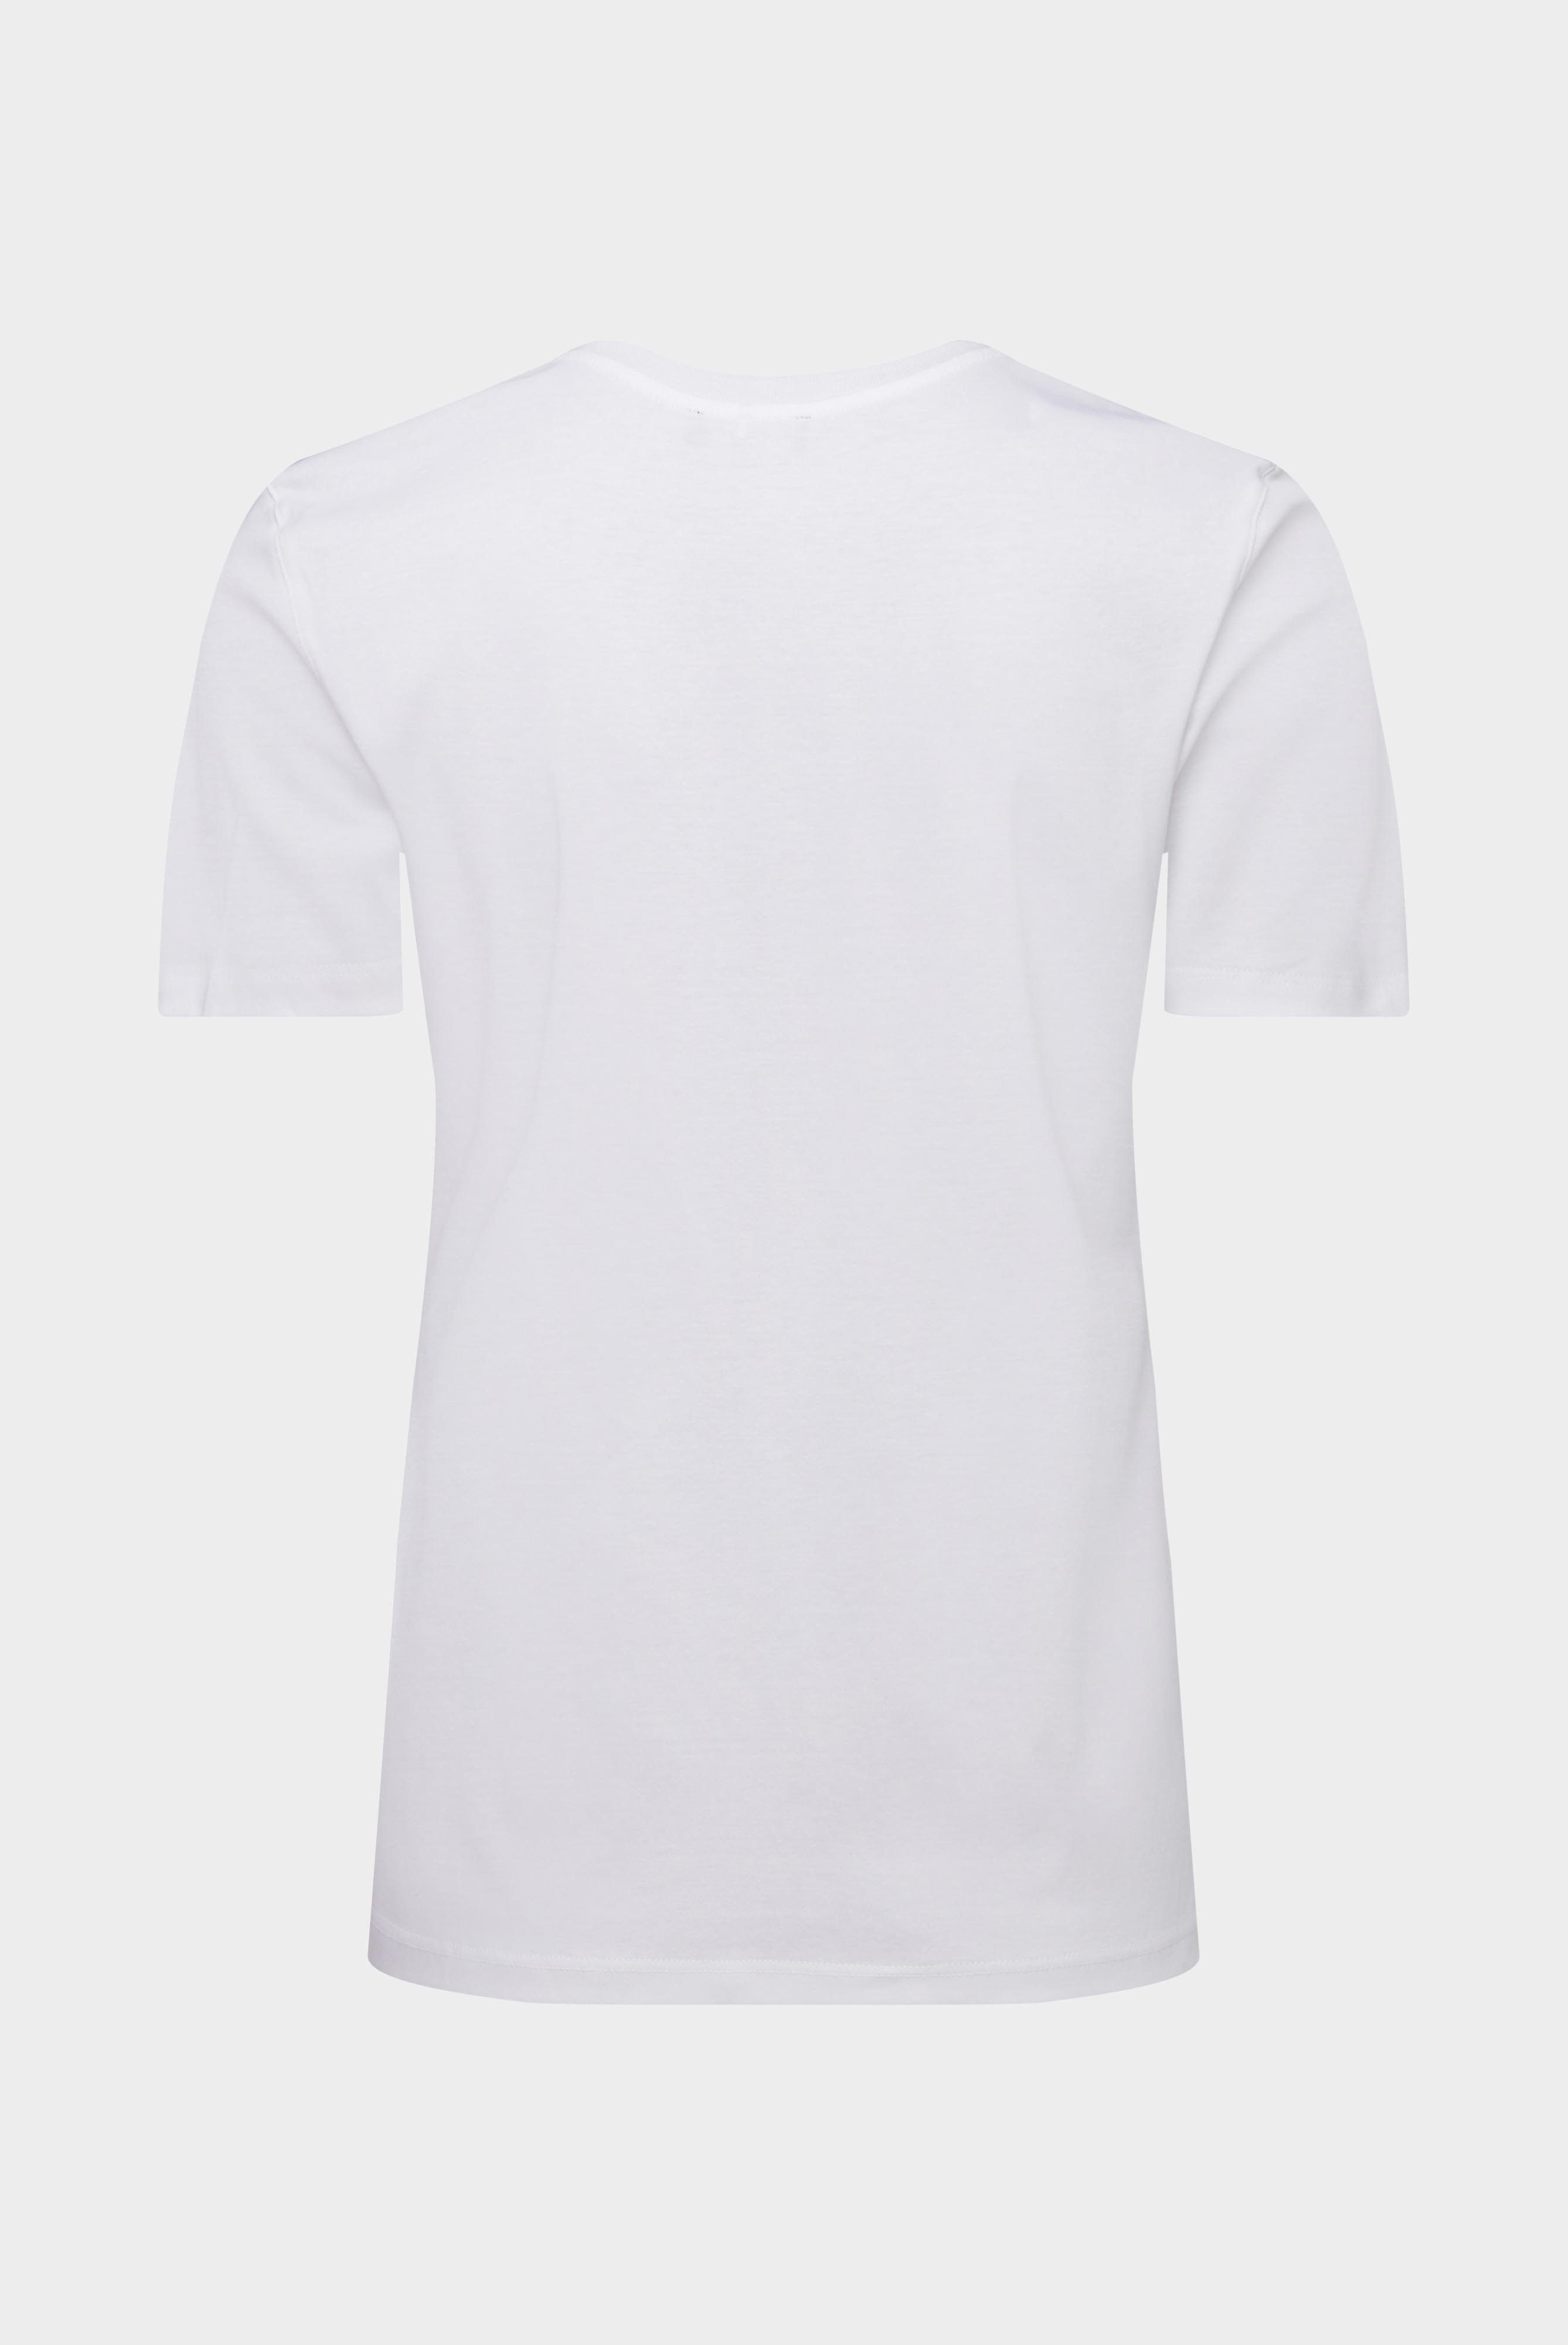 Tops & T-Shirts+Jersey T-Shirt+05.6384.18.180031.000.42